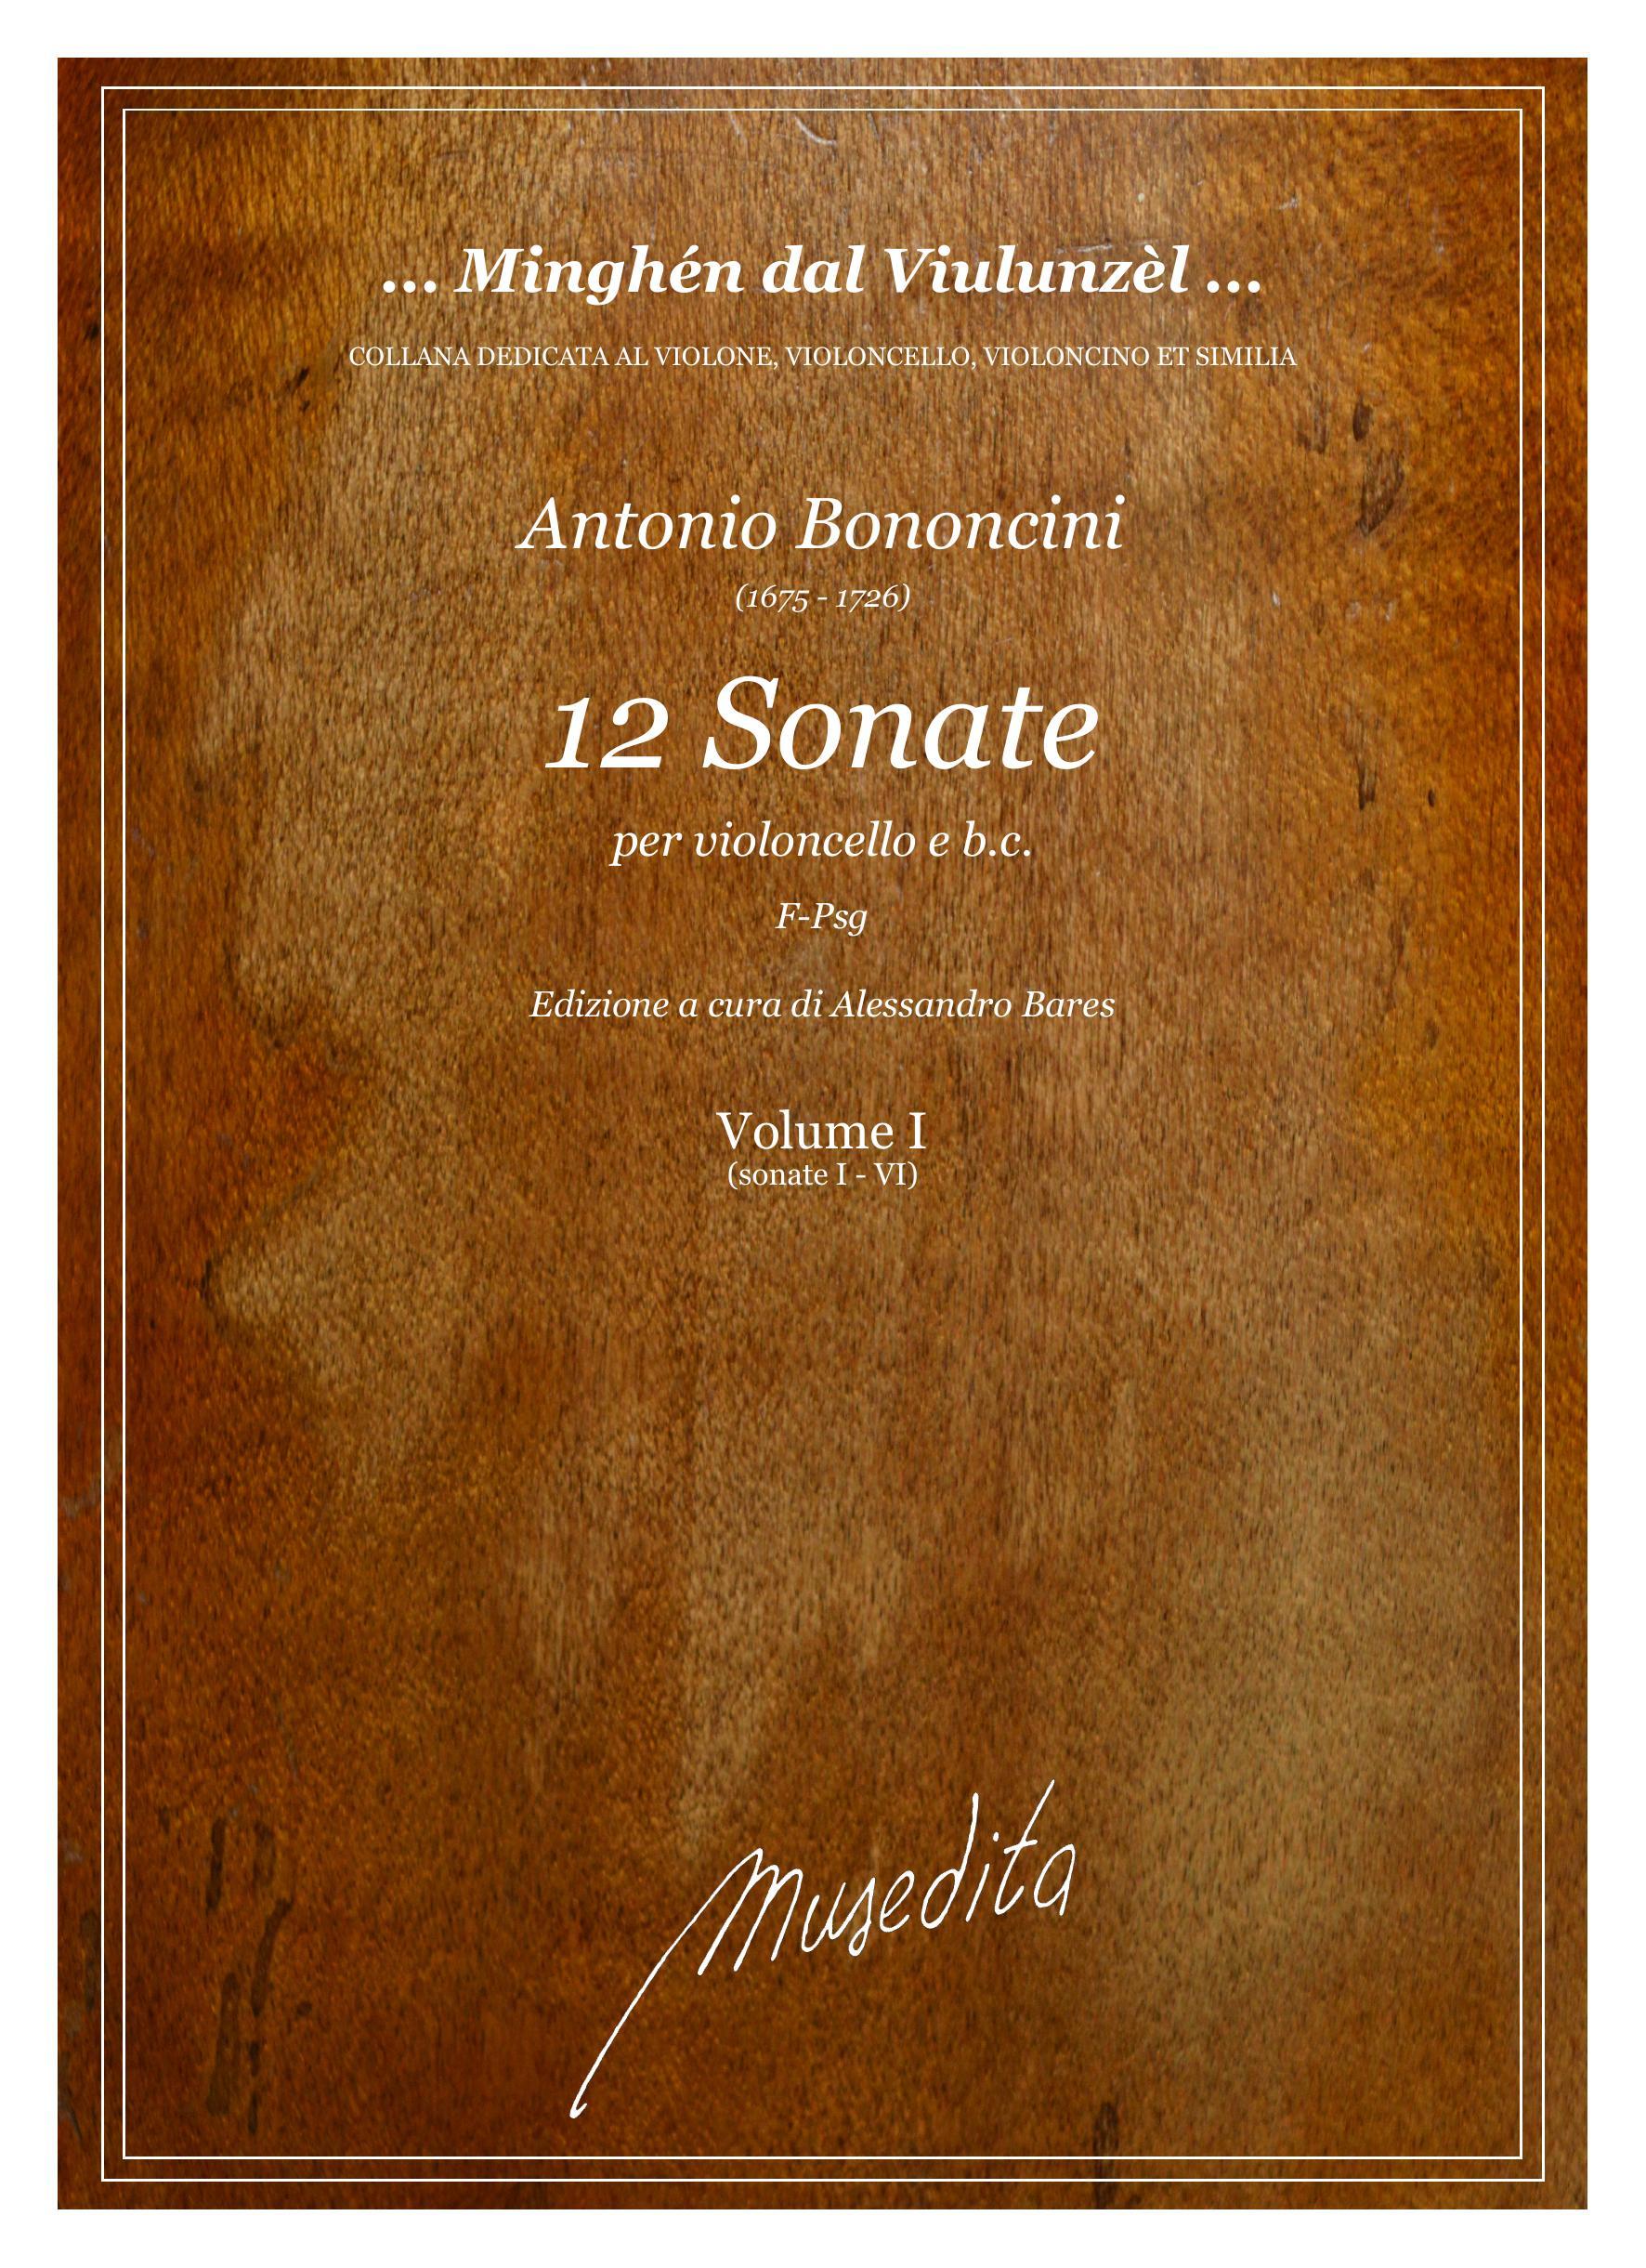 A.Bononcini: 12 Sonate (Ms, F-Psg)